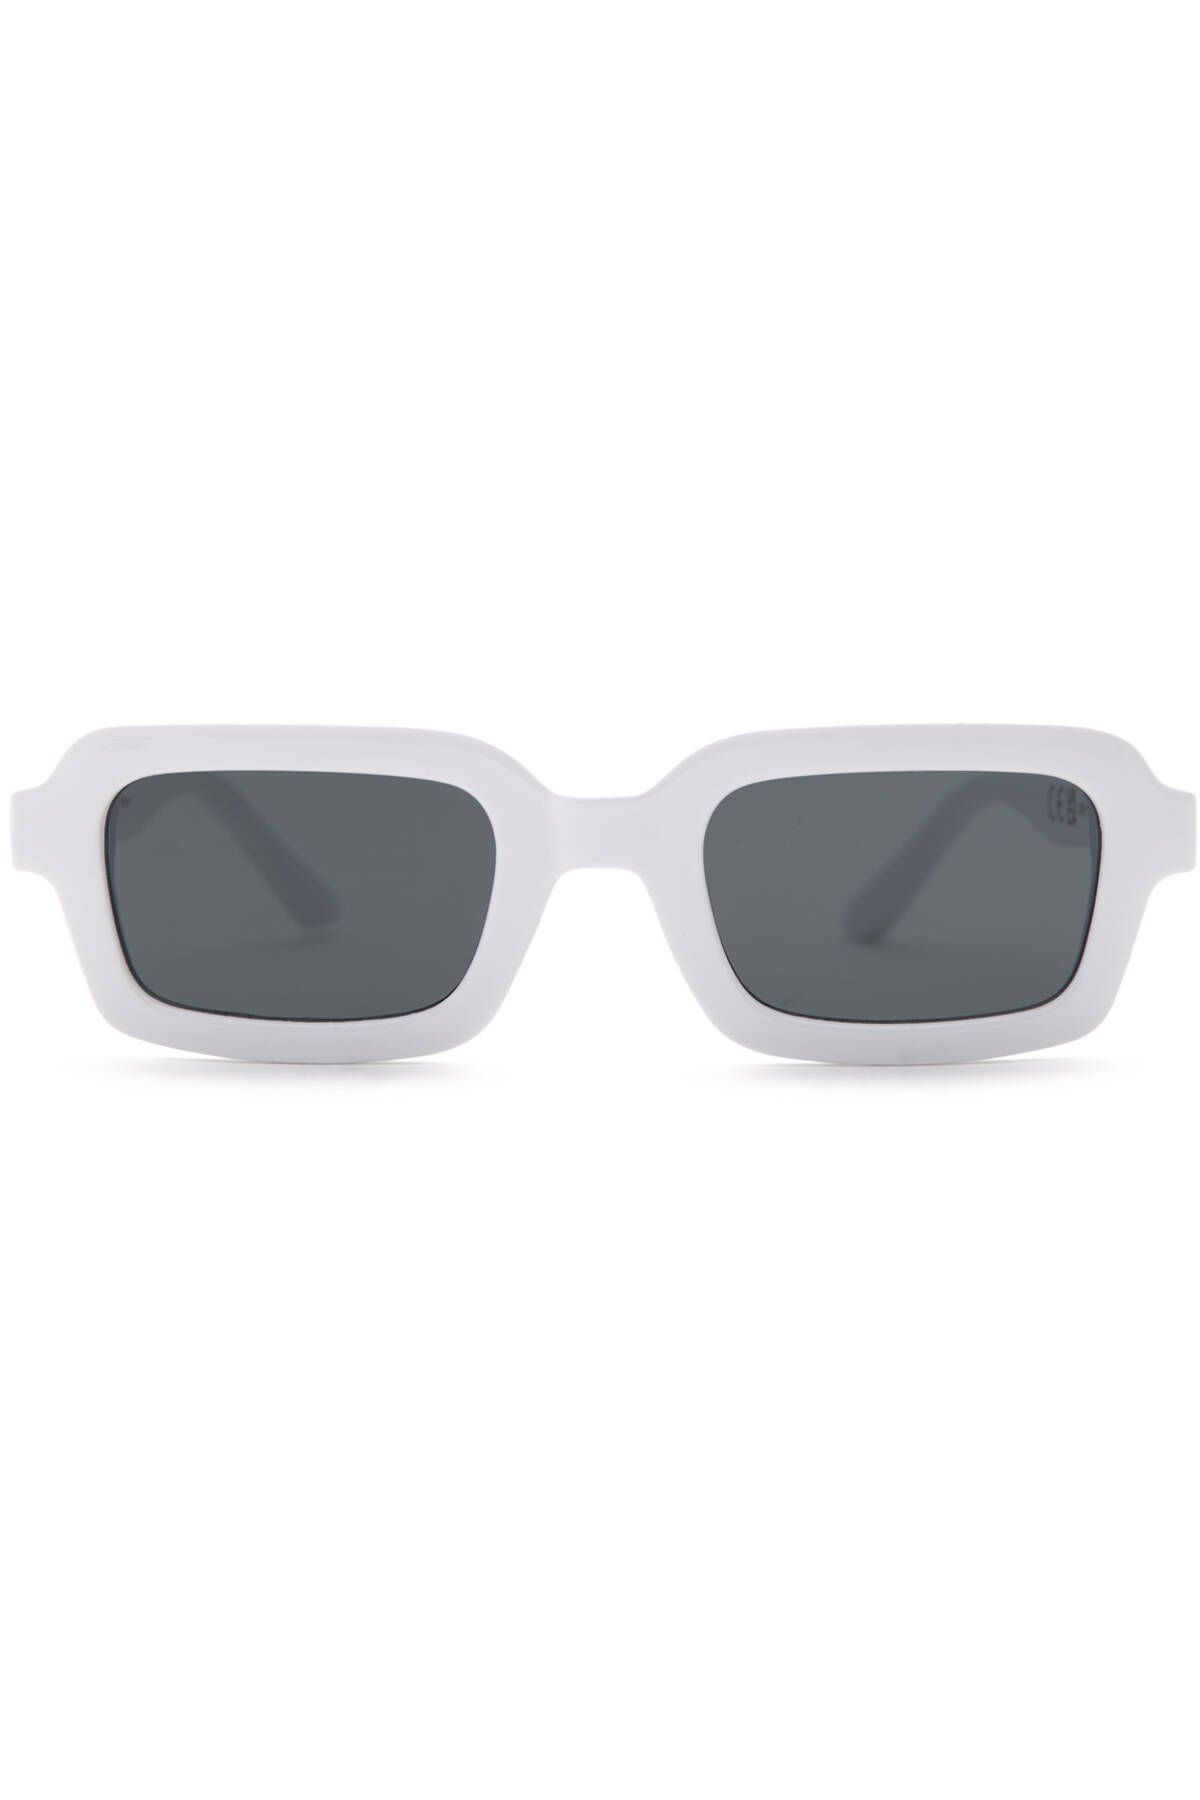 Pull & Bear Dikdörtgen çerçeveli güneş gözlüğü